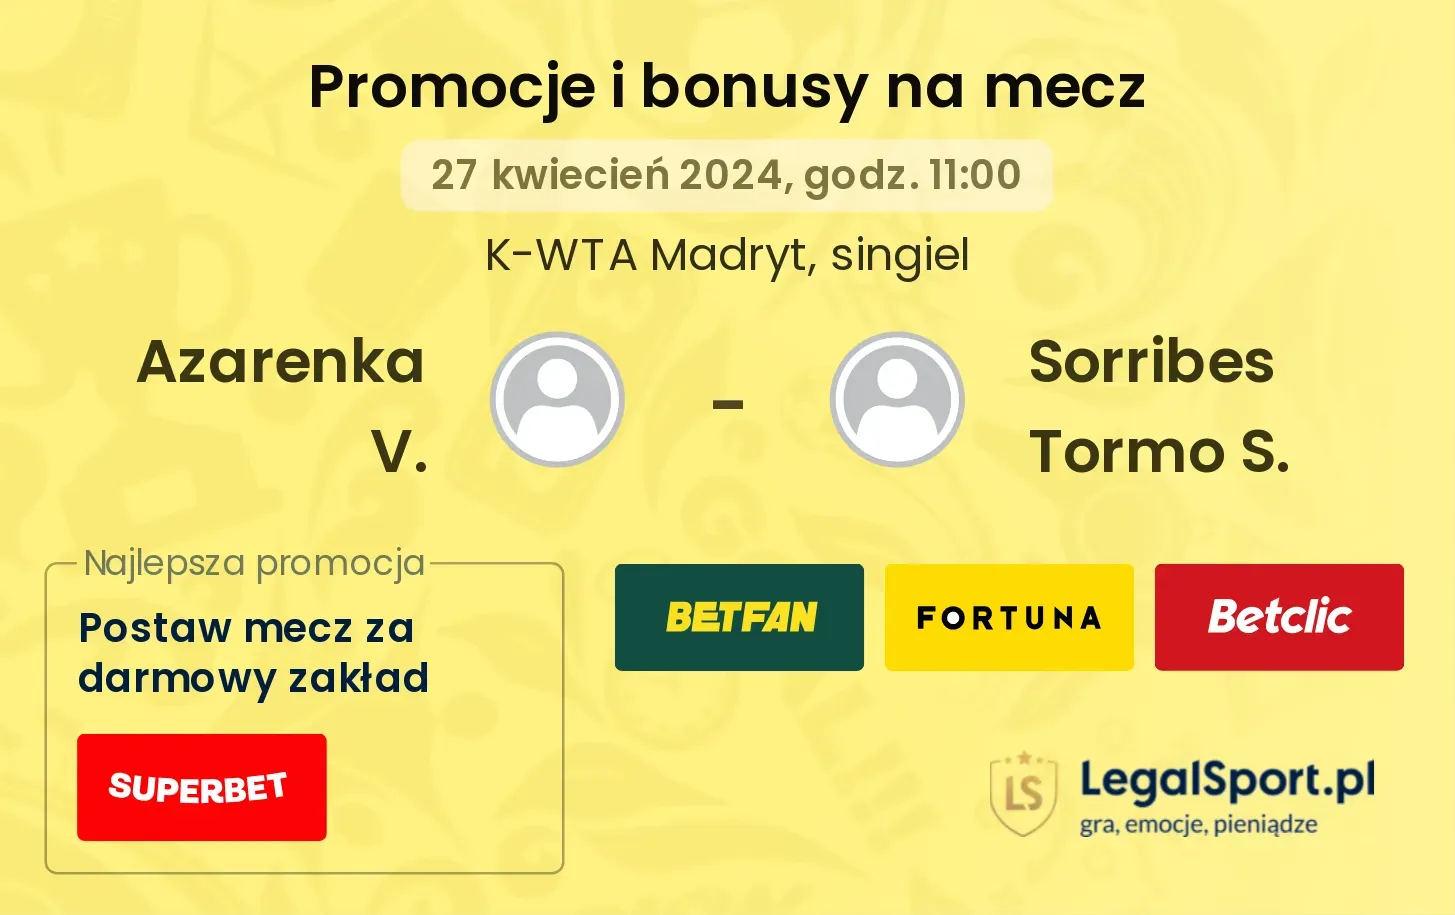 Azarenka V. - Sorribes Tormo S. promocje bonusy na mecz